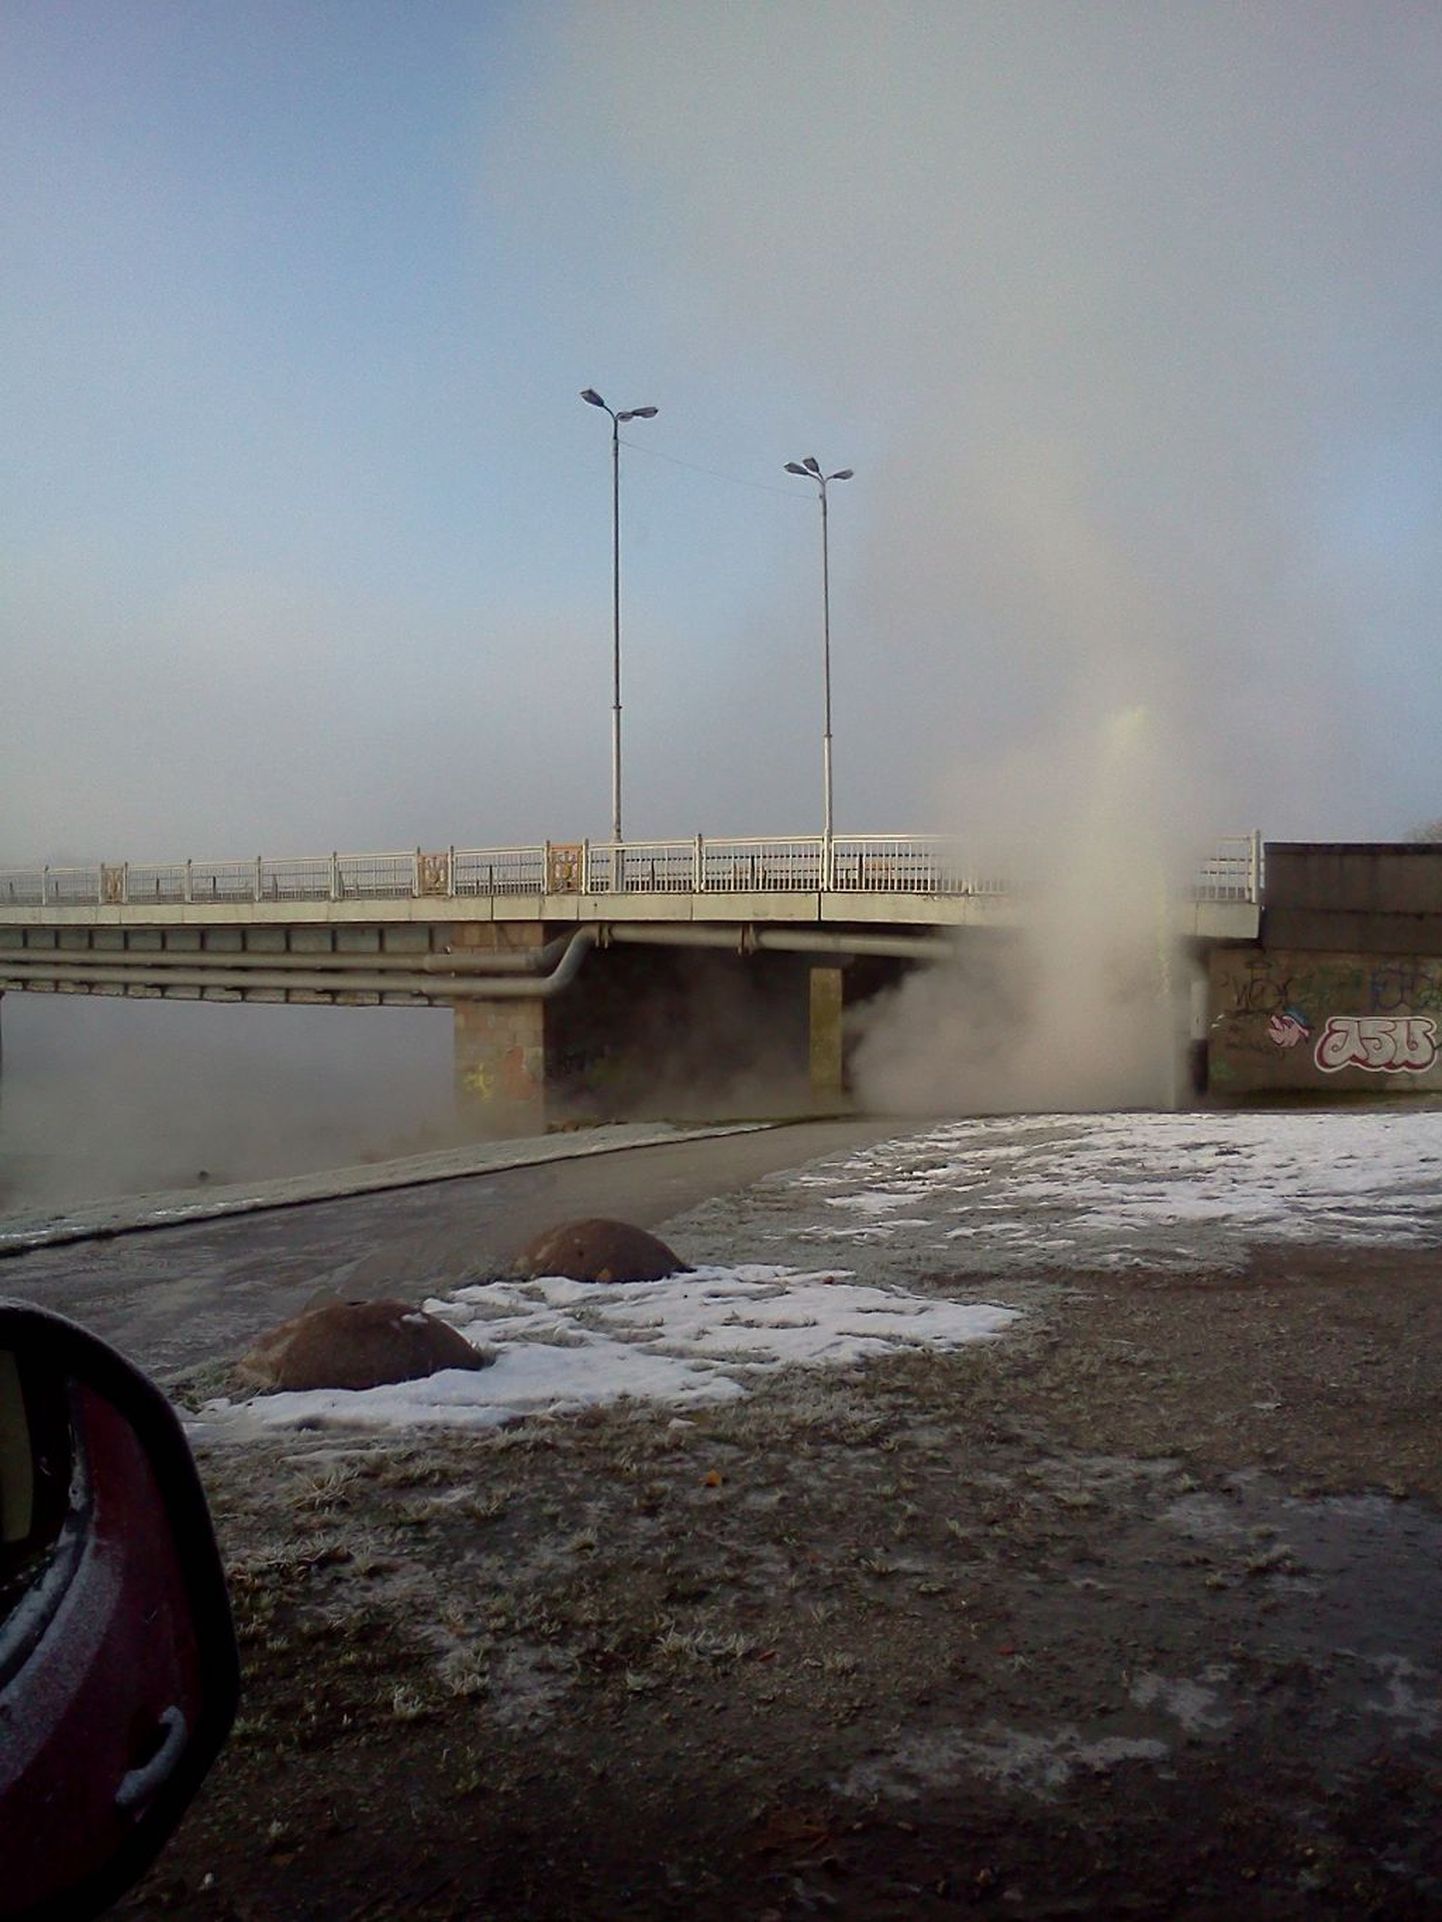 Hommikul Pärnu Kesklinna silla Ülejõe poolses otsa juures lekkima hakanud Fortumi soojatrass paiskas õhku mitme meetri kõrguse veesamba.